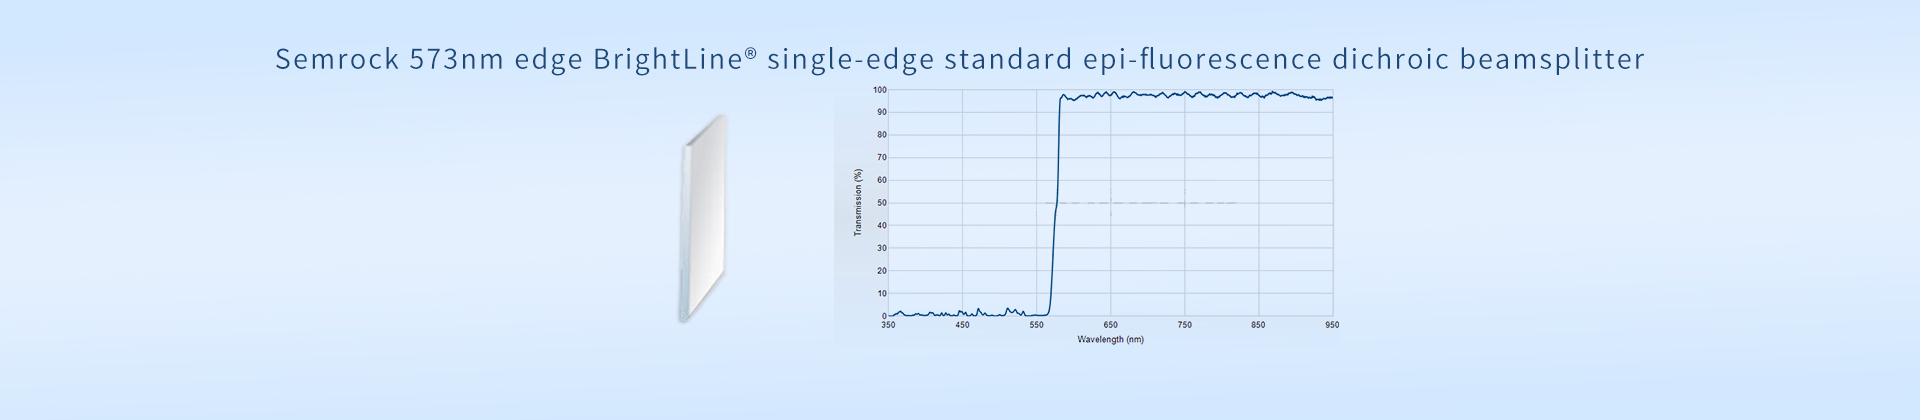 Semrock 573nm edge BrightLine® single-edge standard epi-fluorescence dichroic beamsplitter